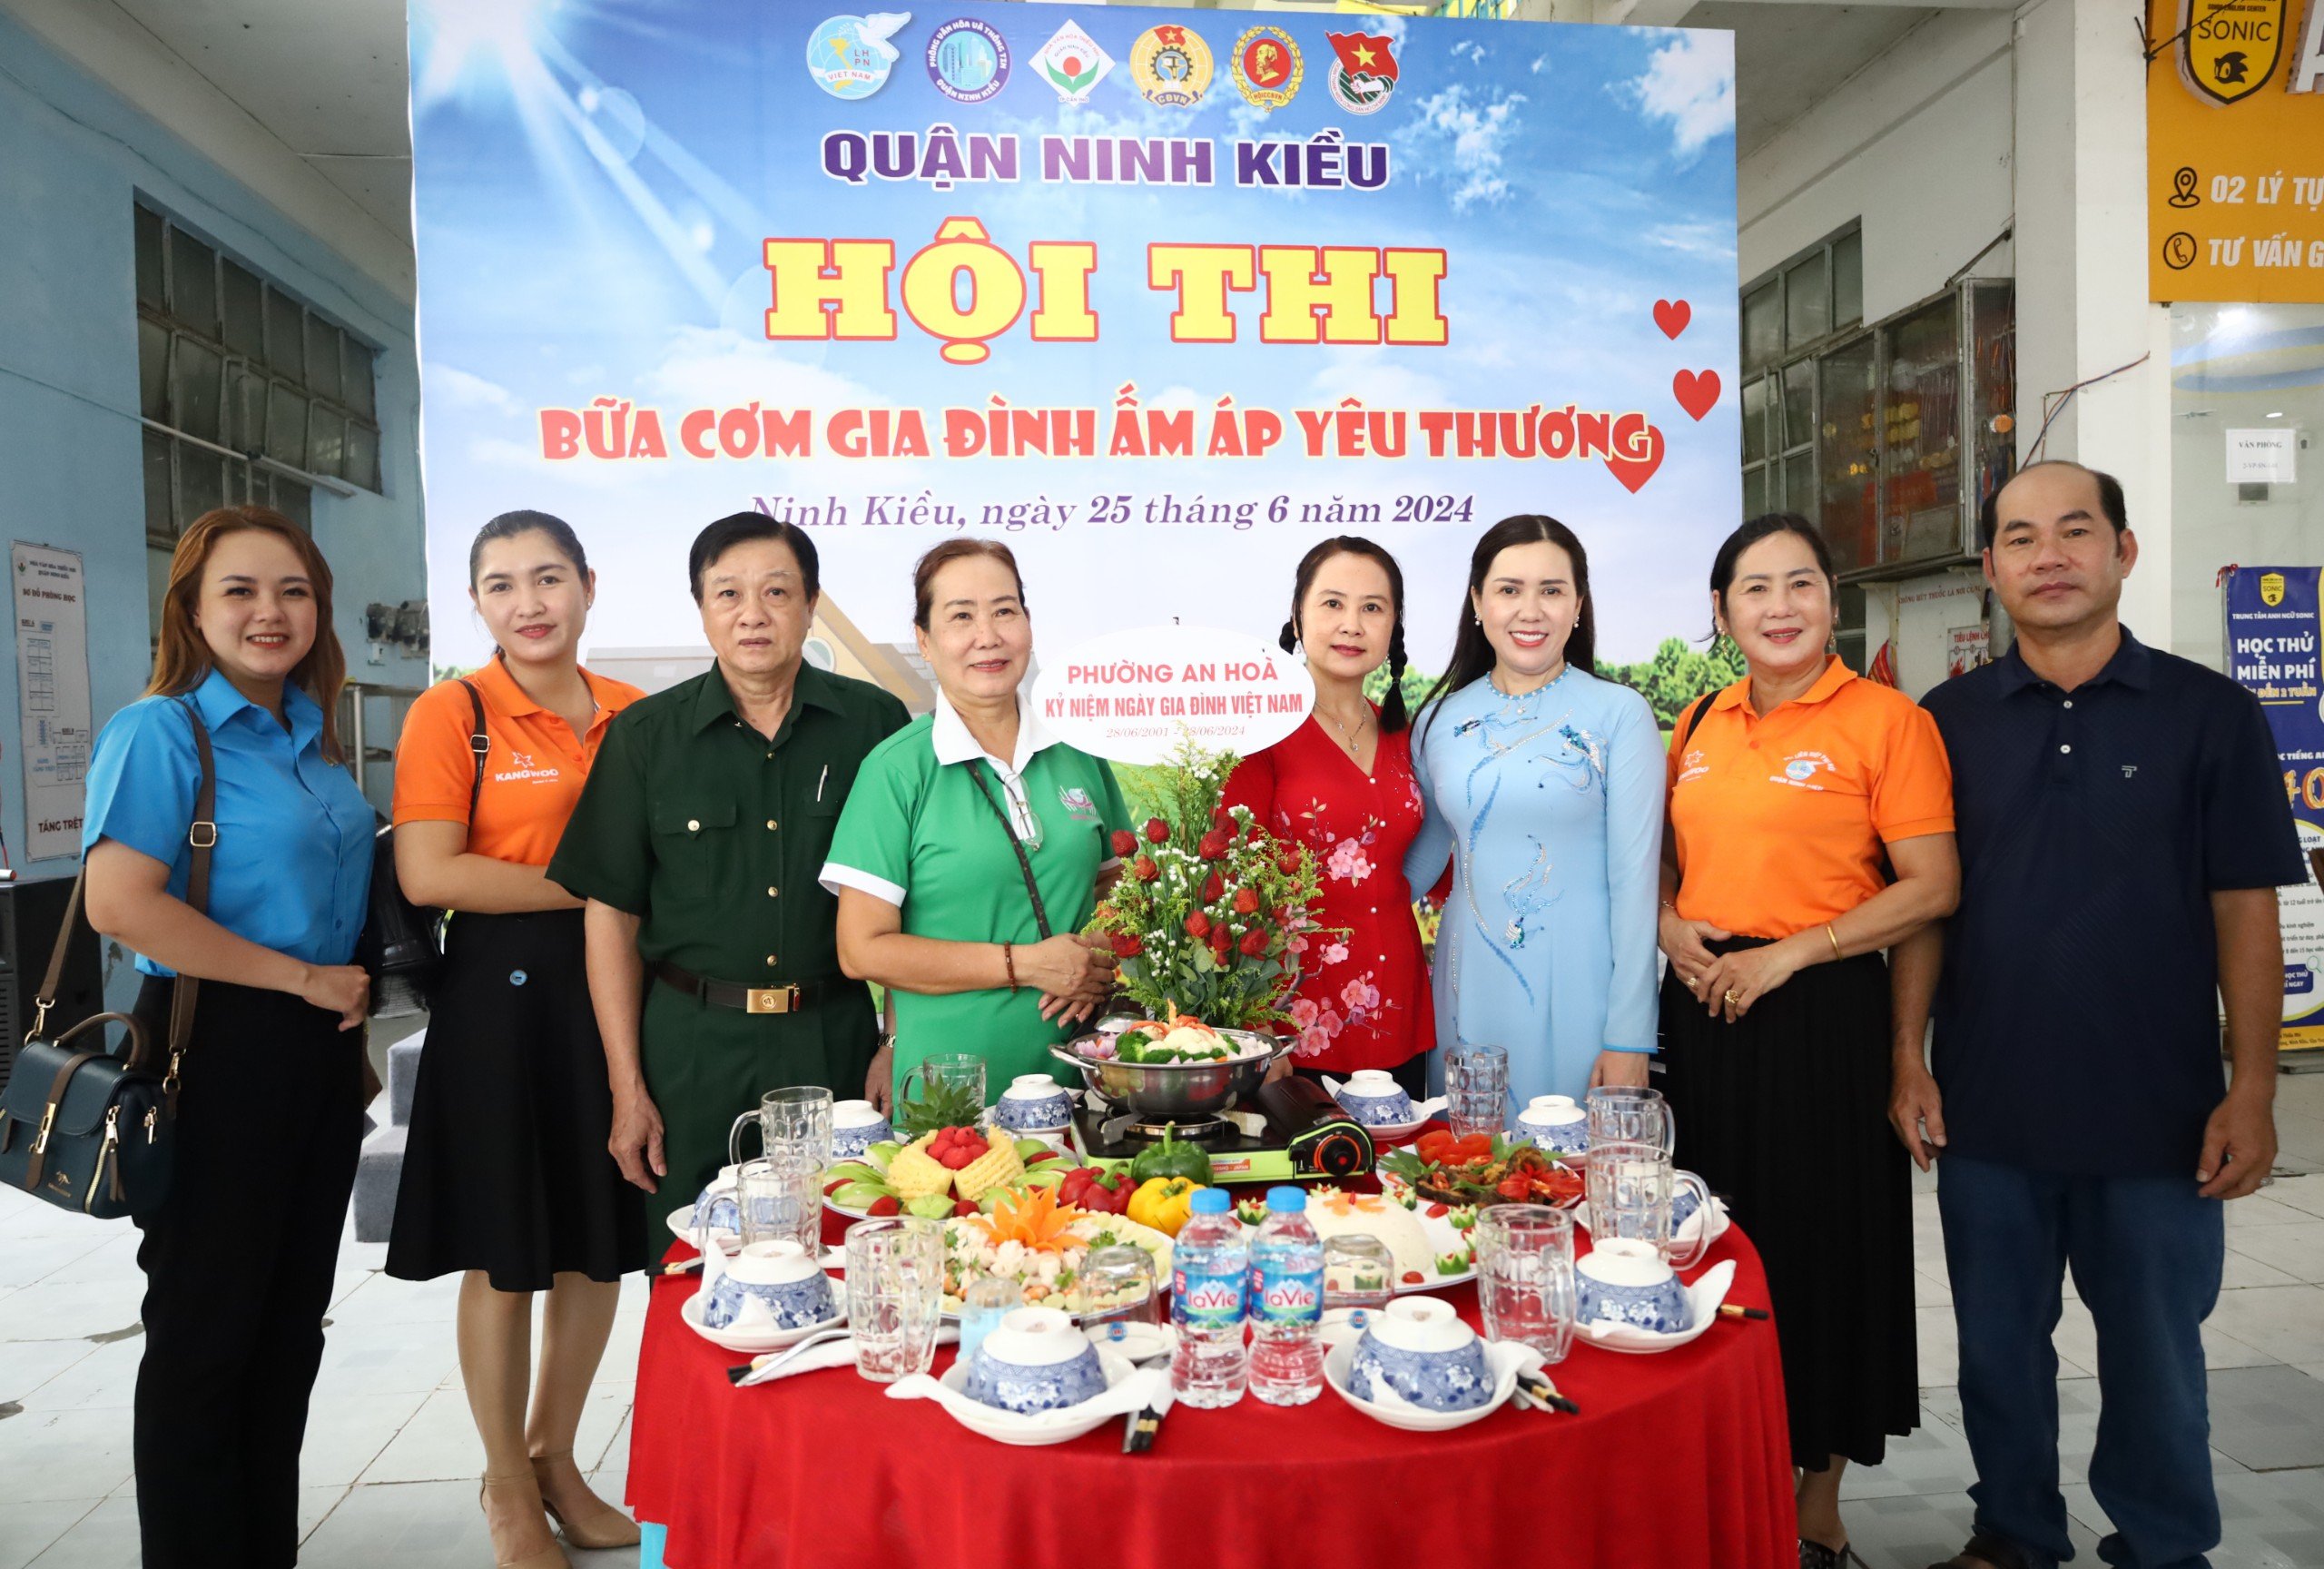 Hội thi trưng bày “Bữa cơm gia đình ấm áp yêu thương” được tổ chức nhằm tôn vinh những giá trị nhân văn sâu sắc của gia đình Việt Nam.